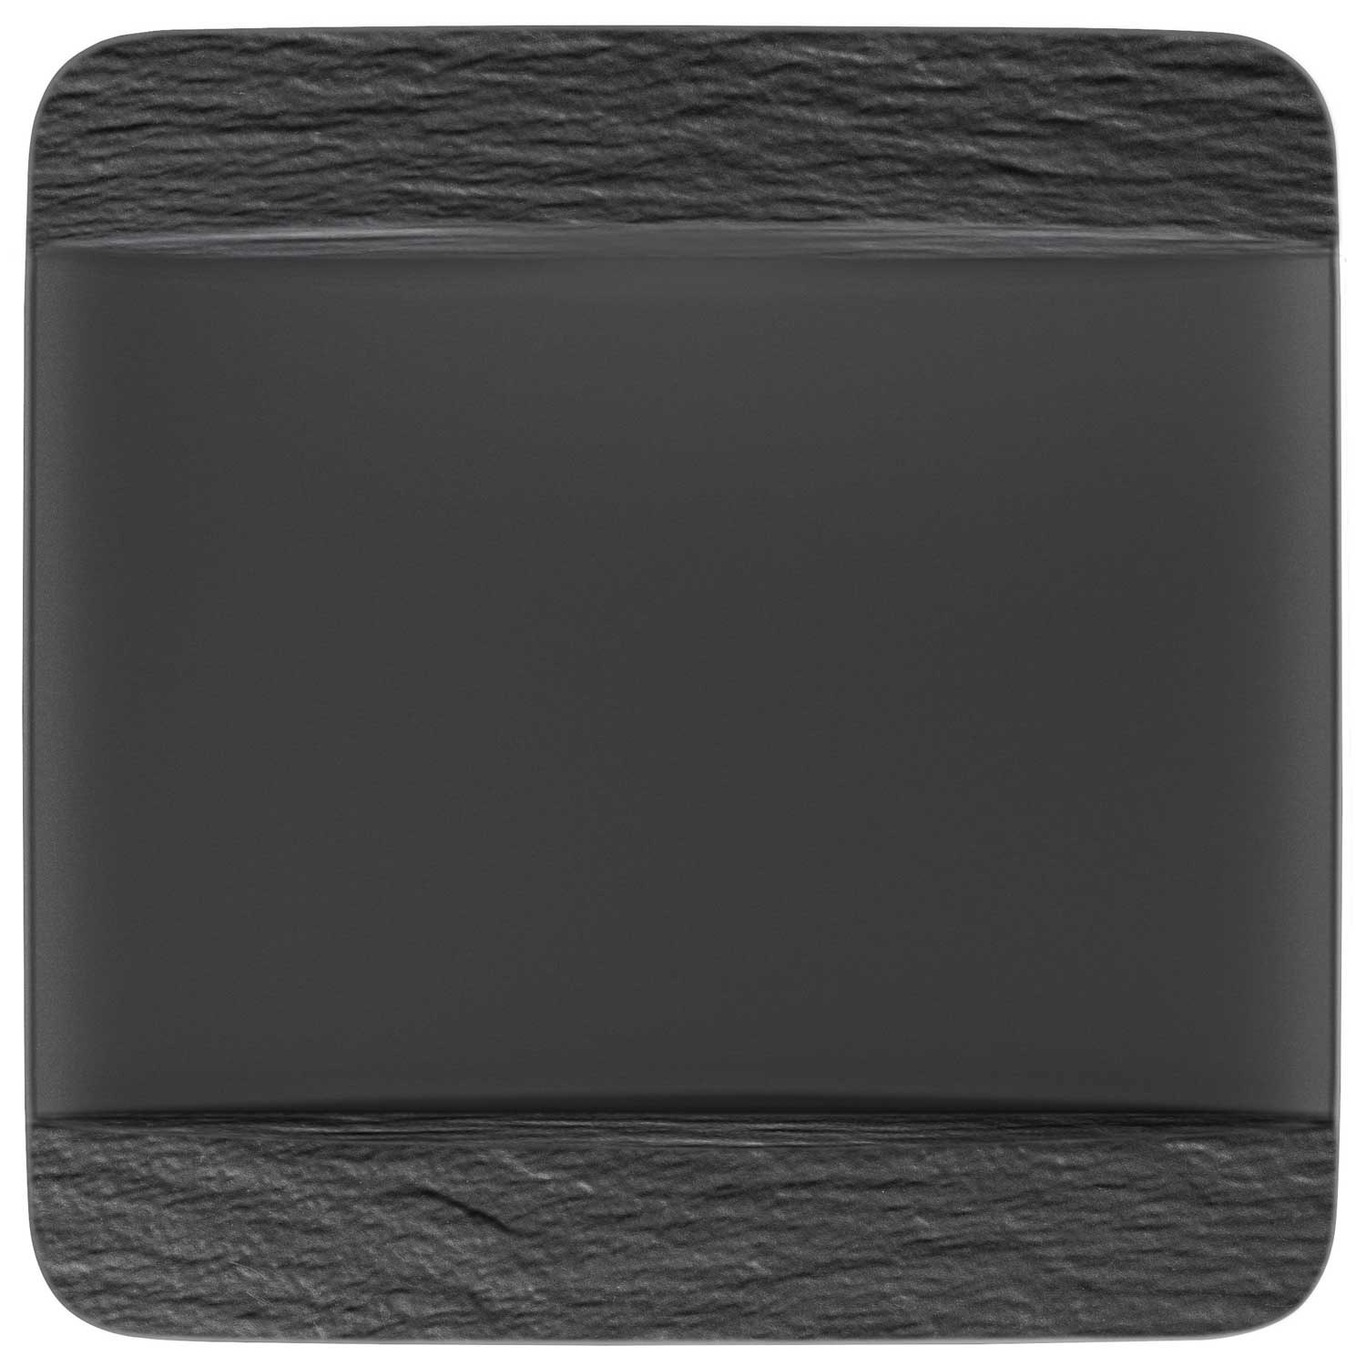 Manufacture Rock Squared Plate, Black 28 cm